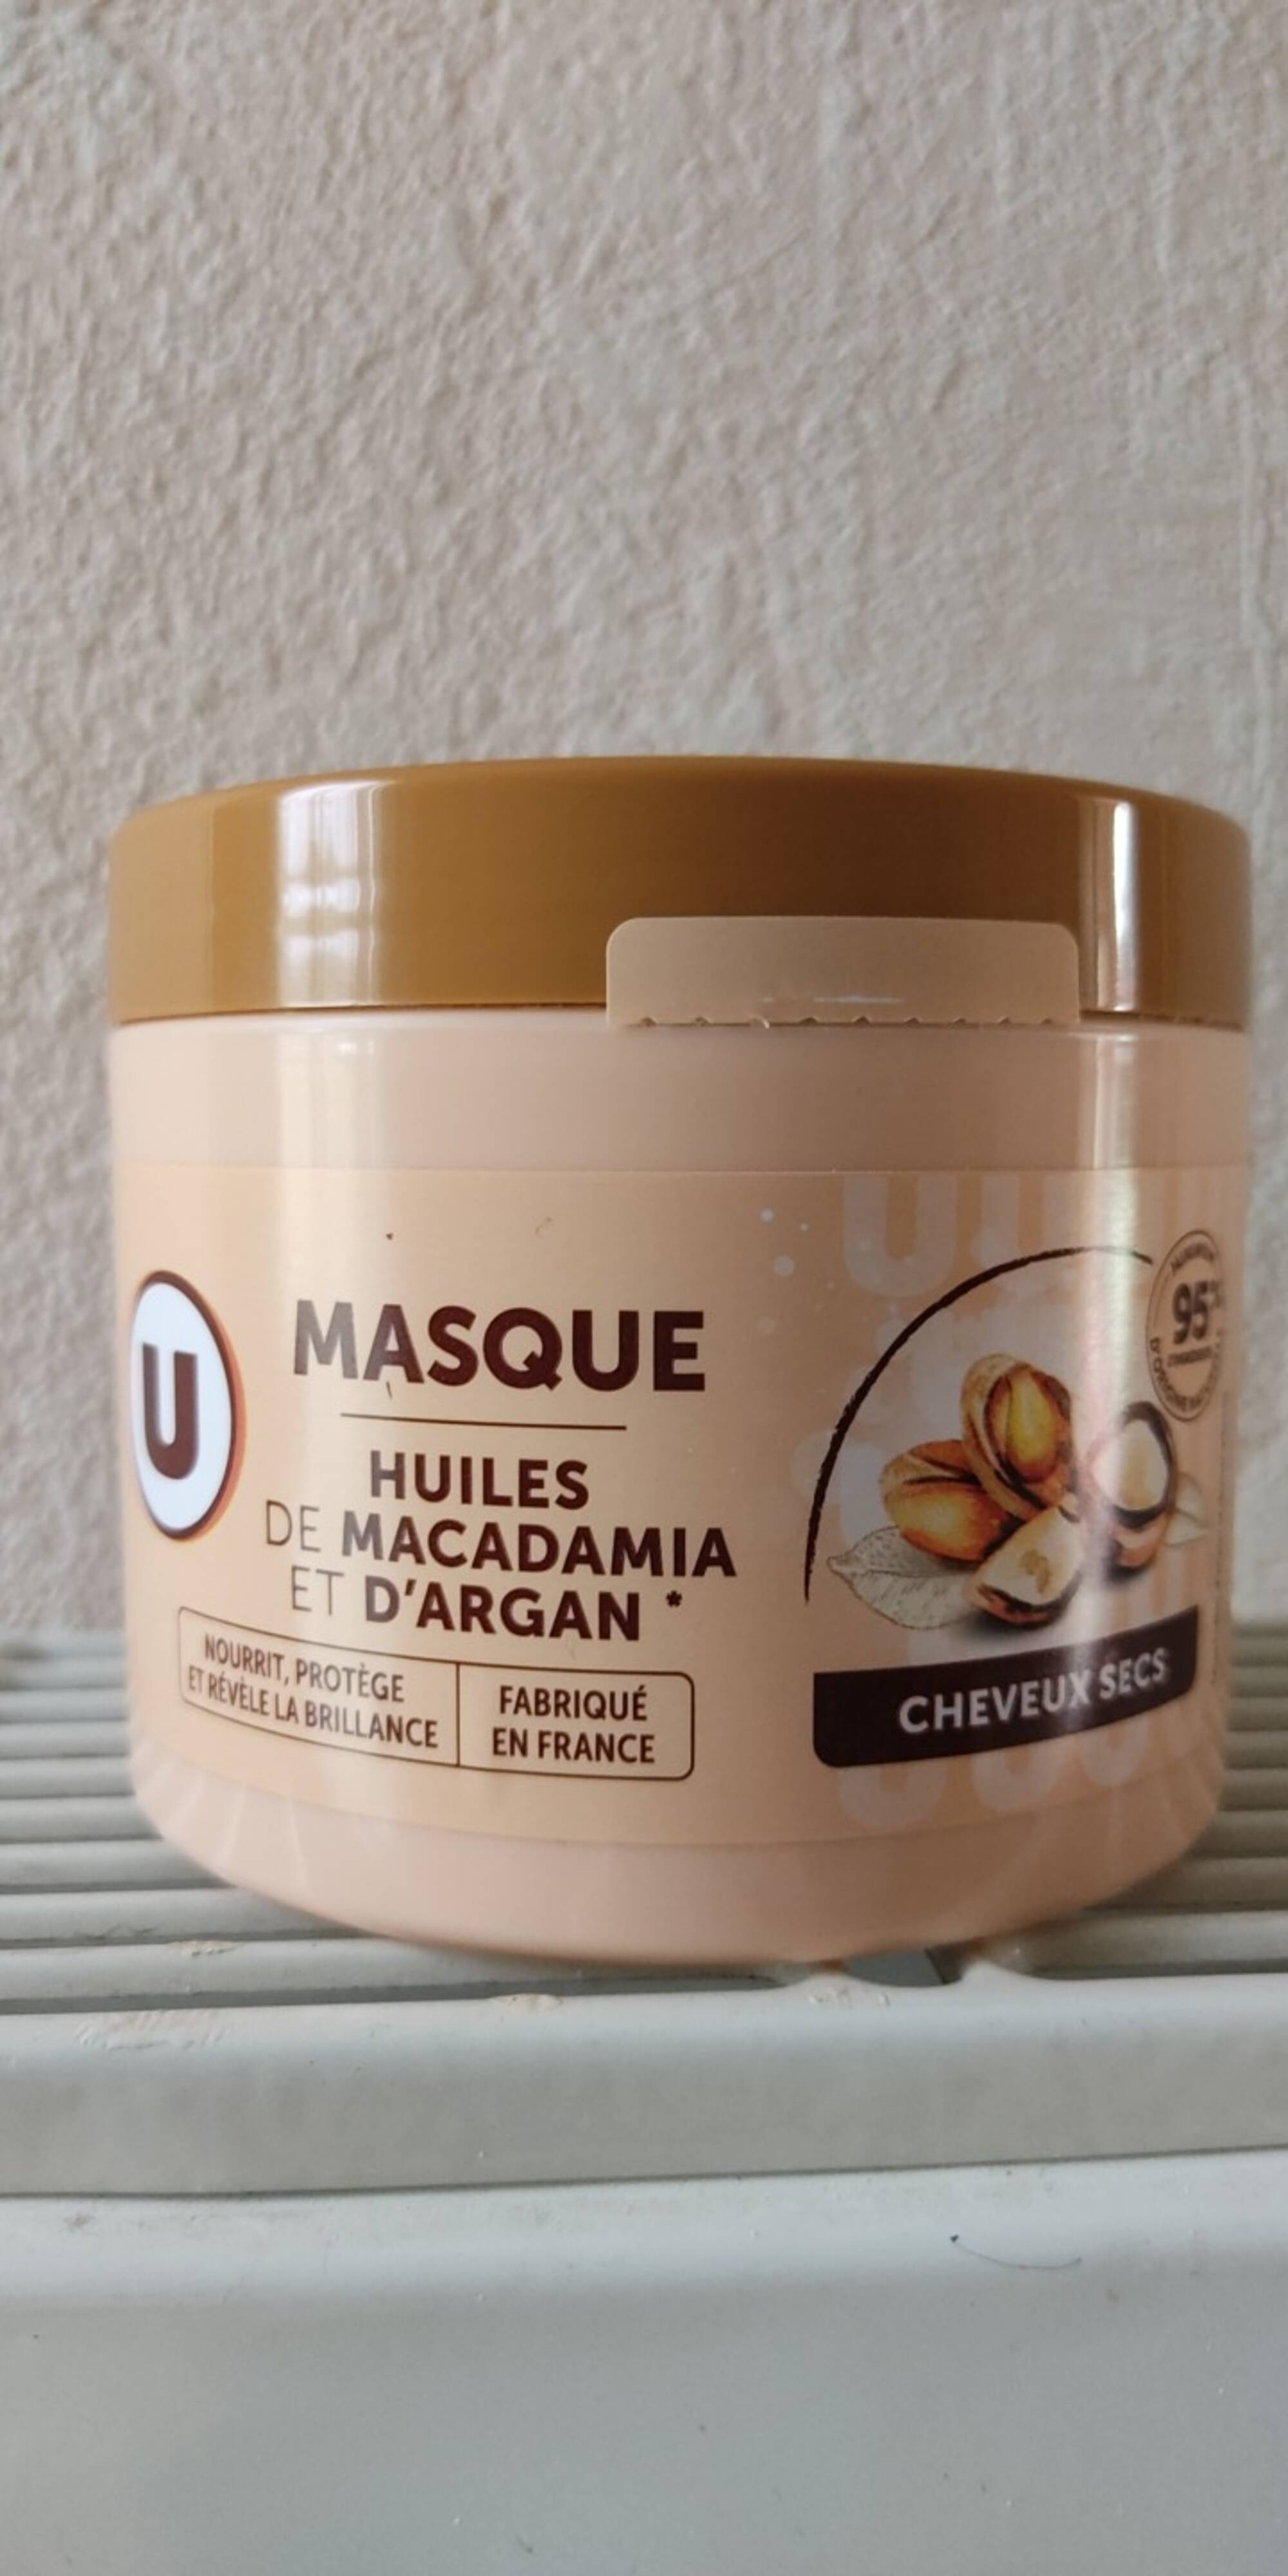 BY U - Masque aux huiles de macadamia et d'argan